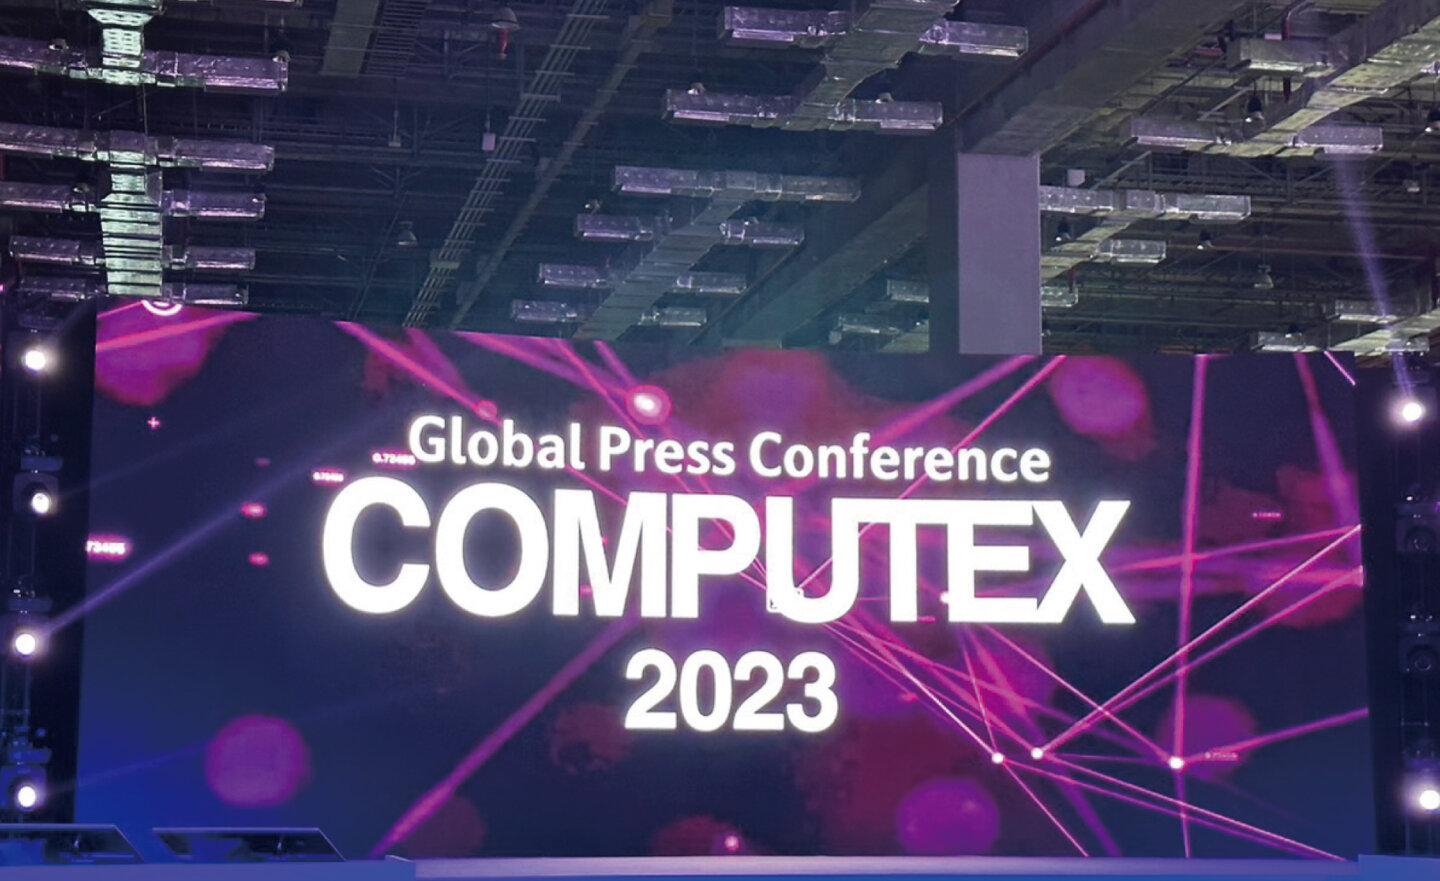 【COMPUTEX 2023】國內外科技巨擘雲集，匯聚前瞻科技創新能量